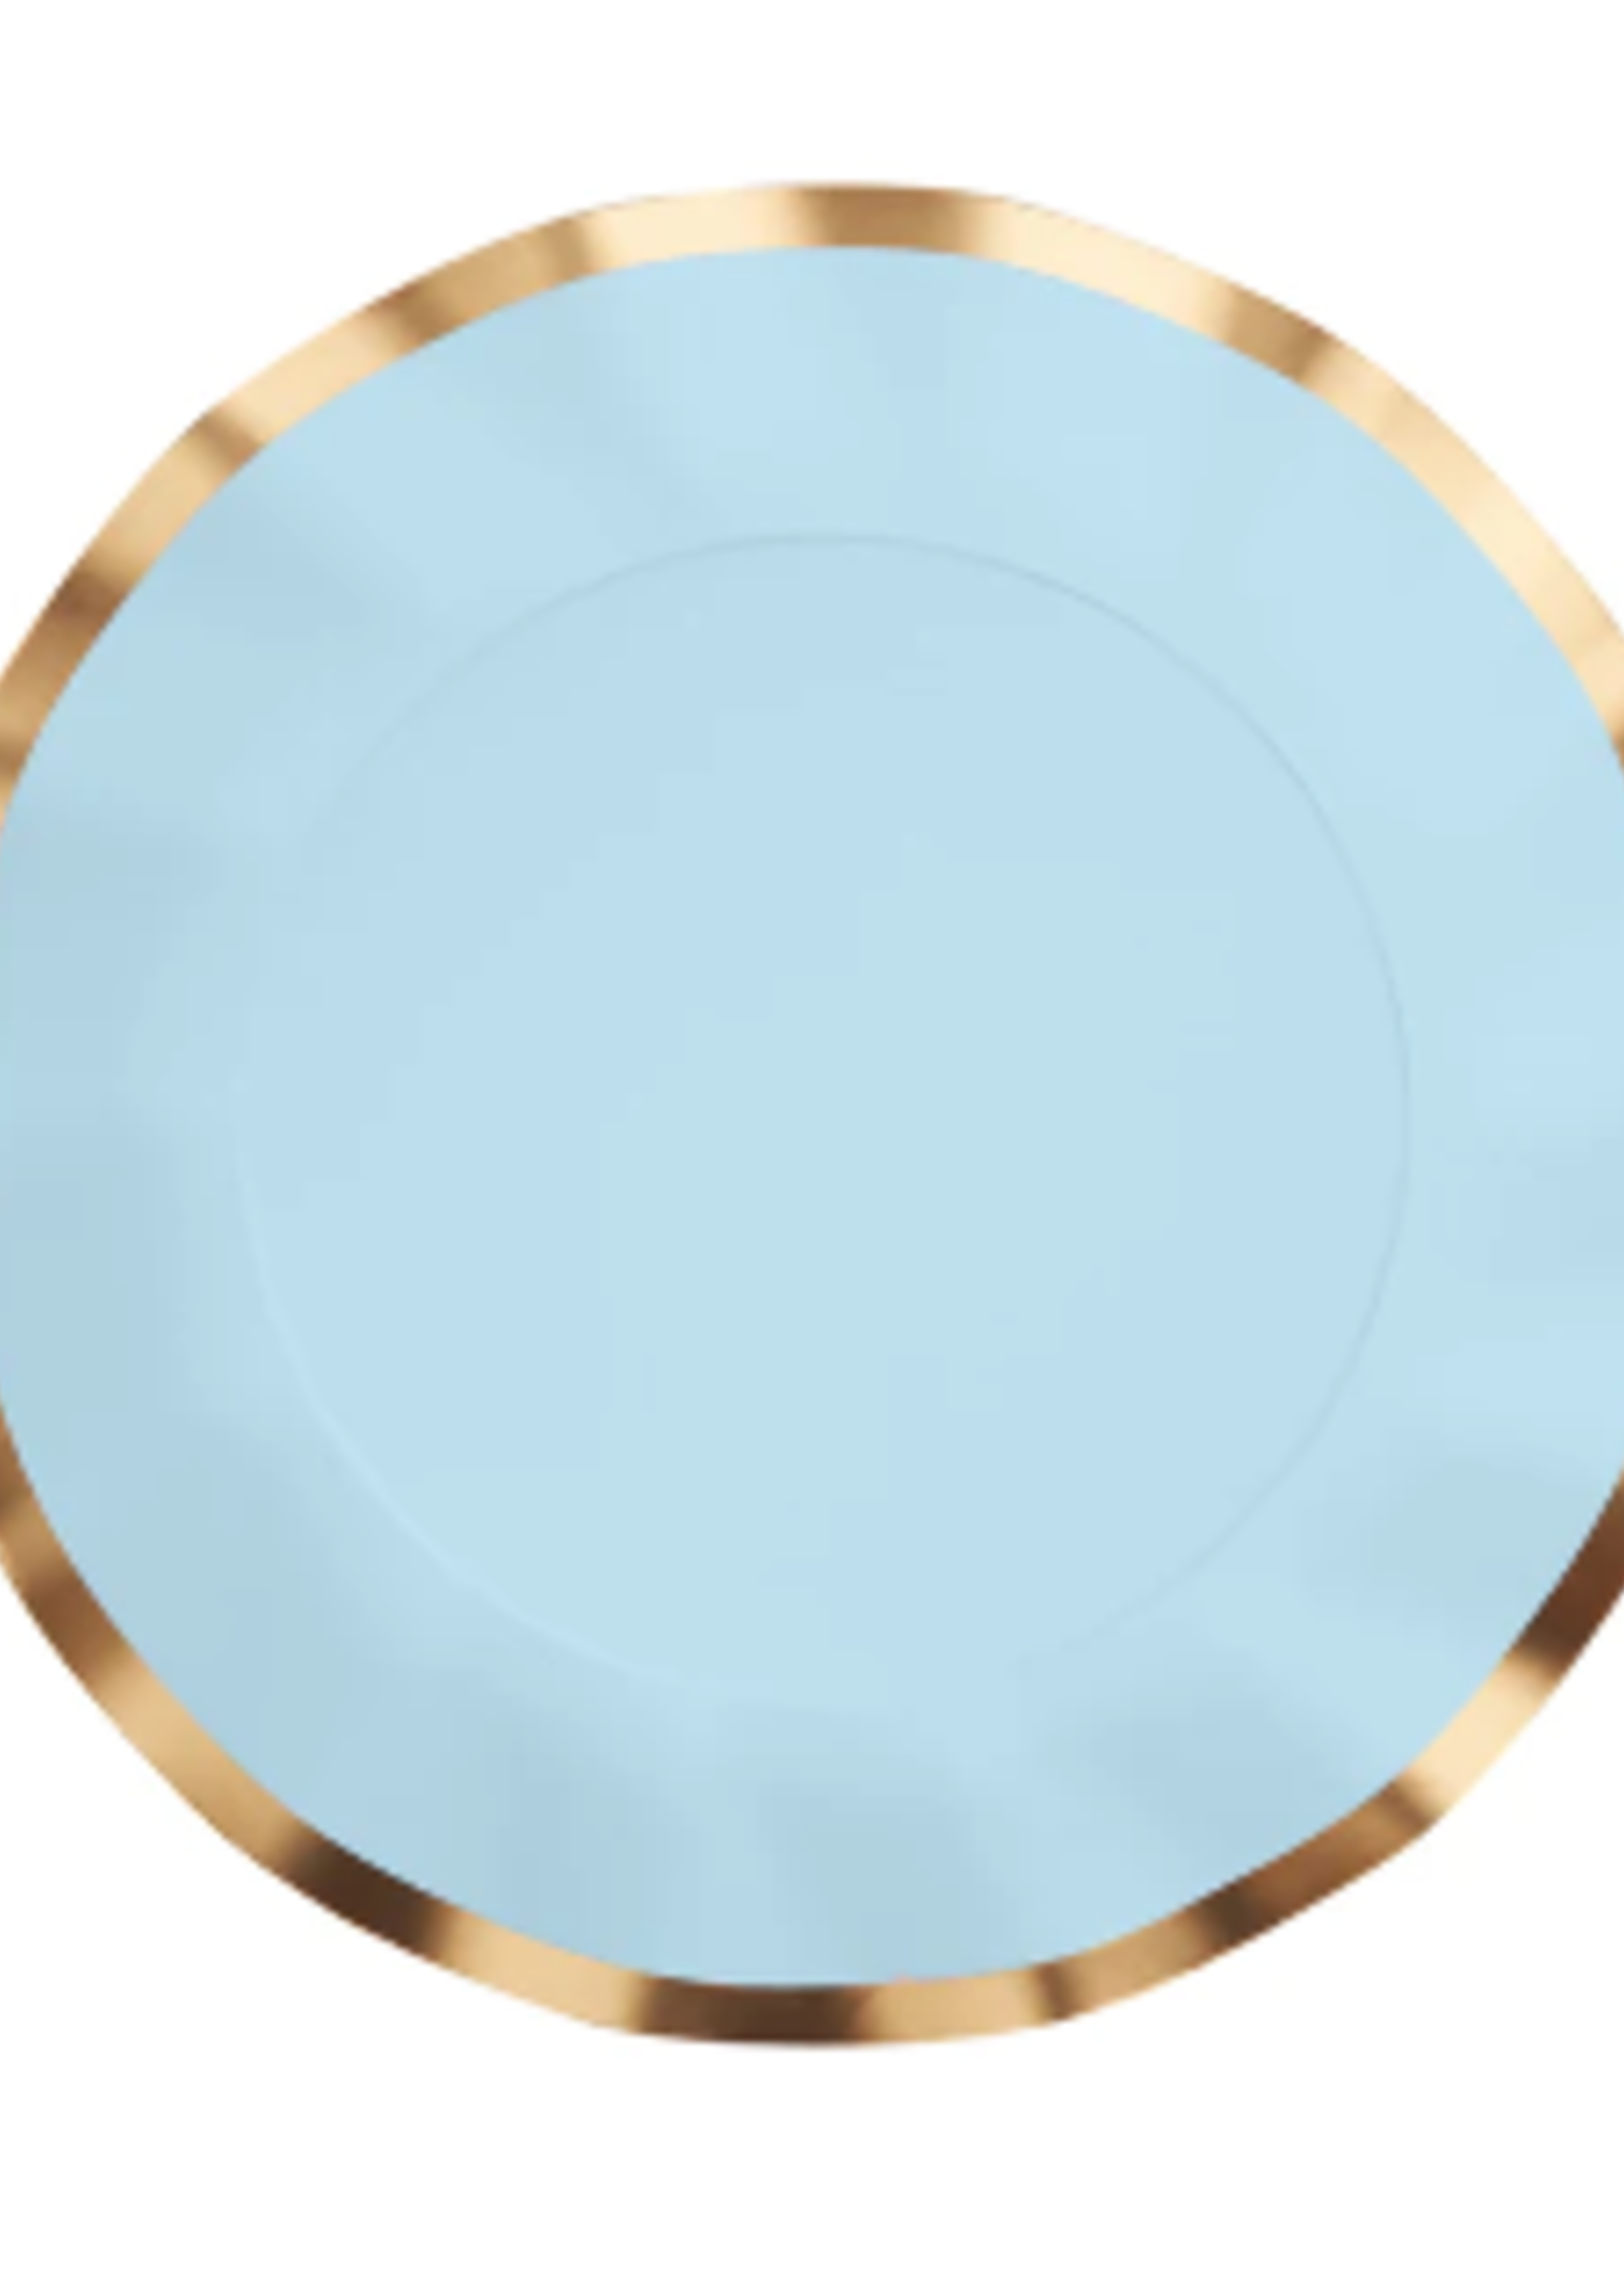 Sophistiplate Wavy Dinner Plate Everyday Sky Blue - 8pkg